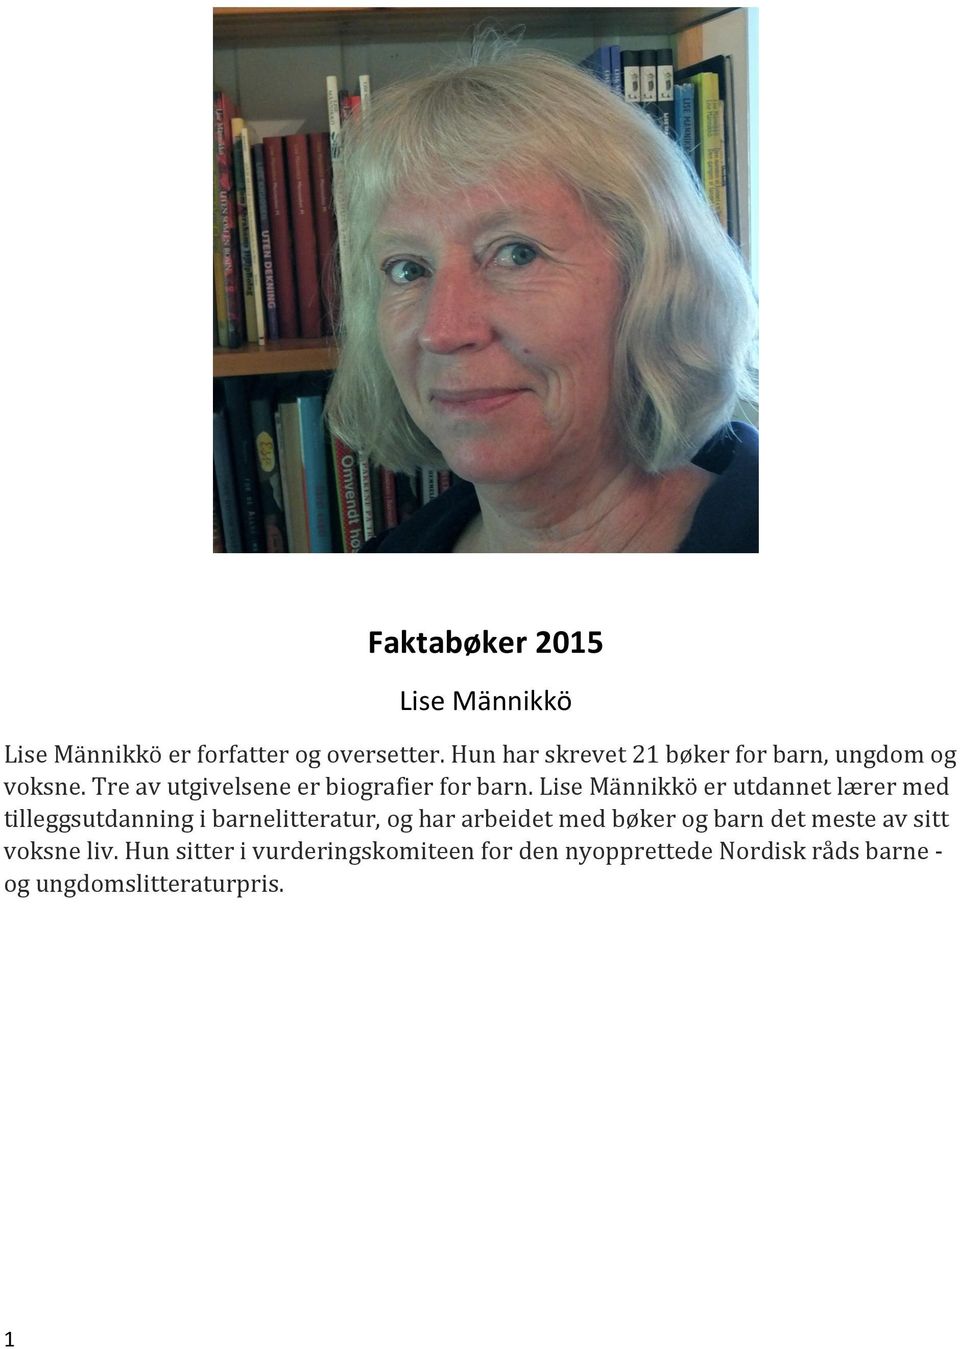 Lise Männikkö er utdannet lærer med tilleggsutdanning i barnelitteratur, og har arbeidet med bøker og